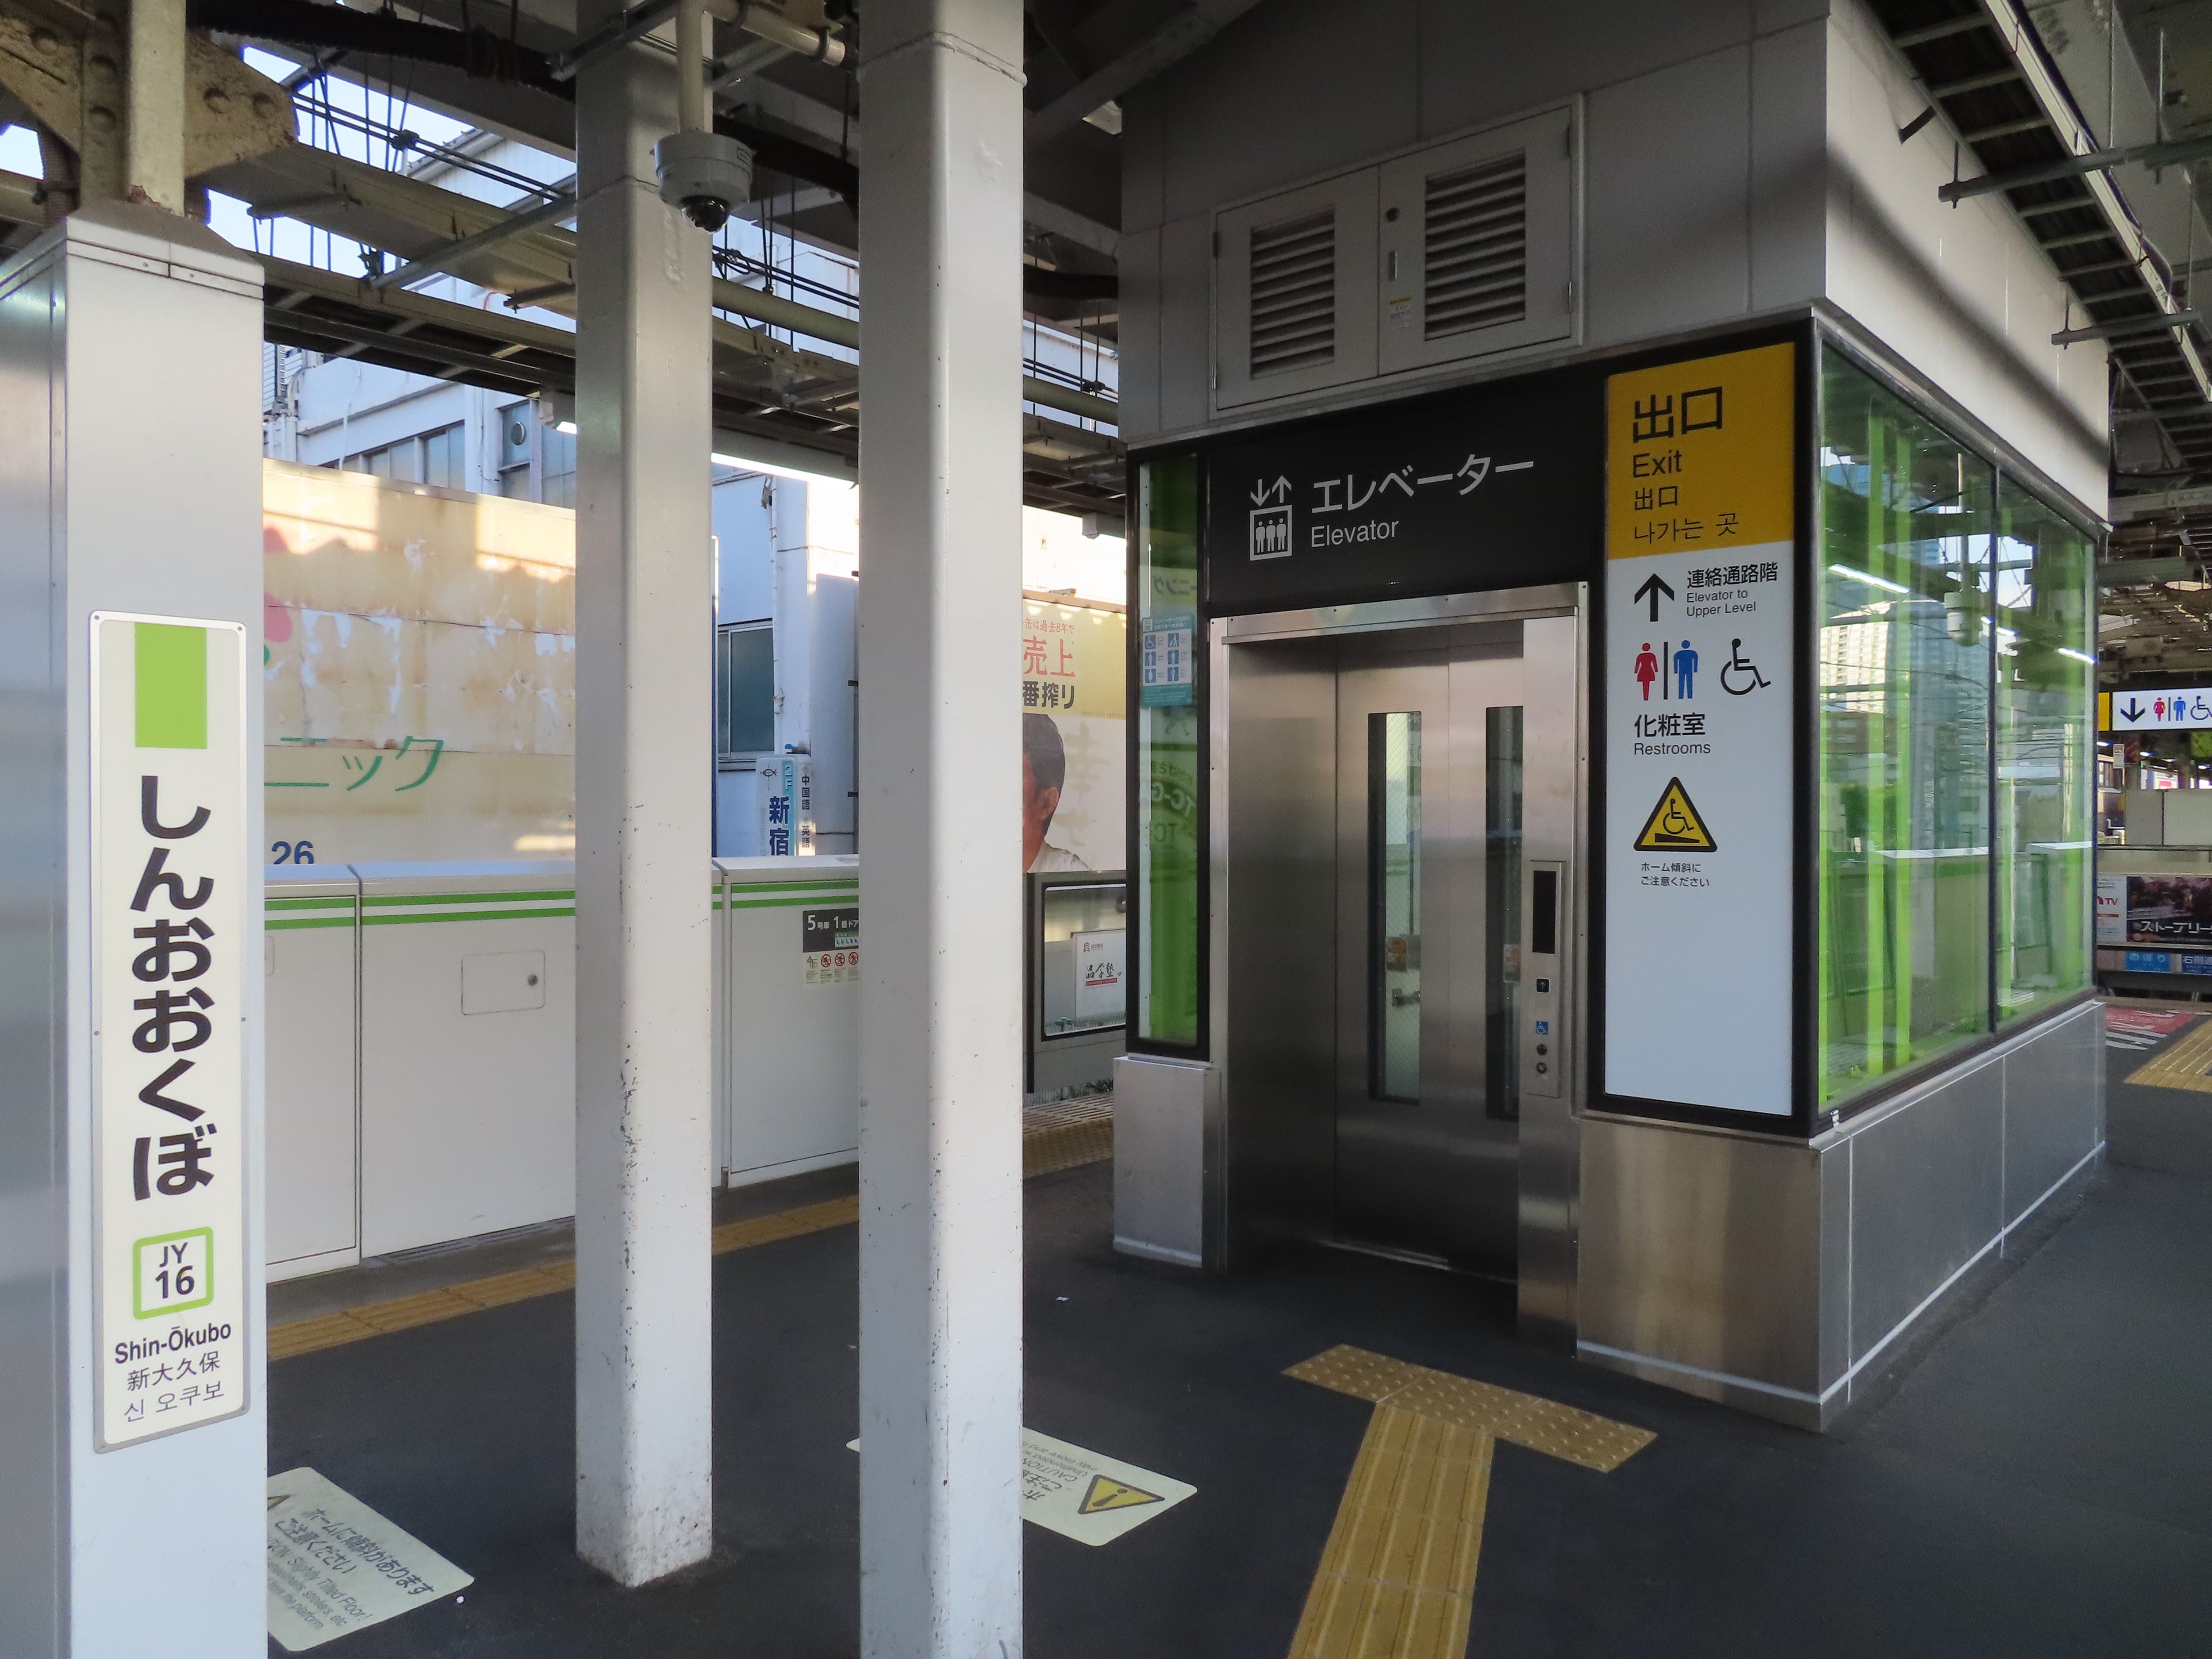 駅 新 大久保 JR東日本、なぜ新大久保駅上にフードラボなのか